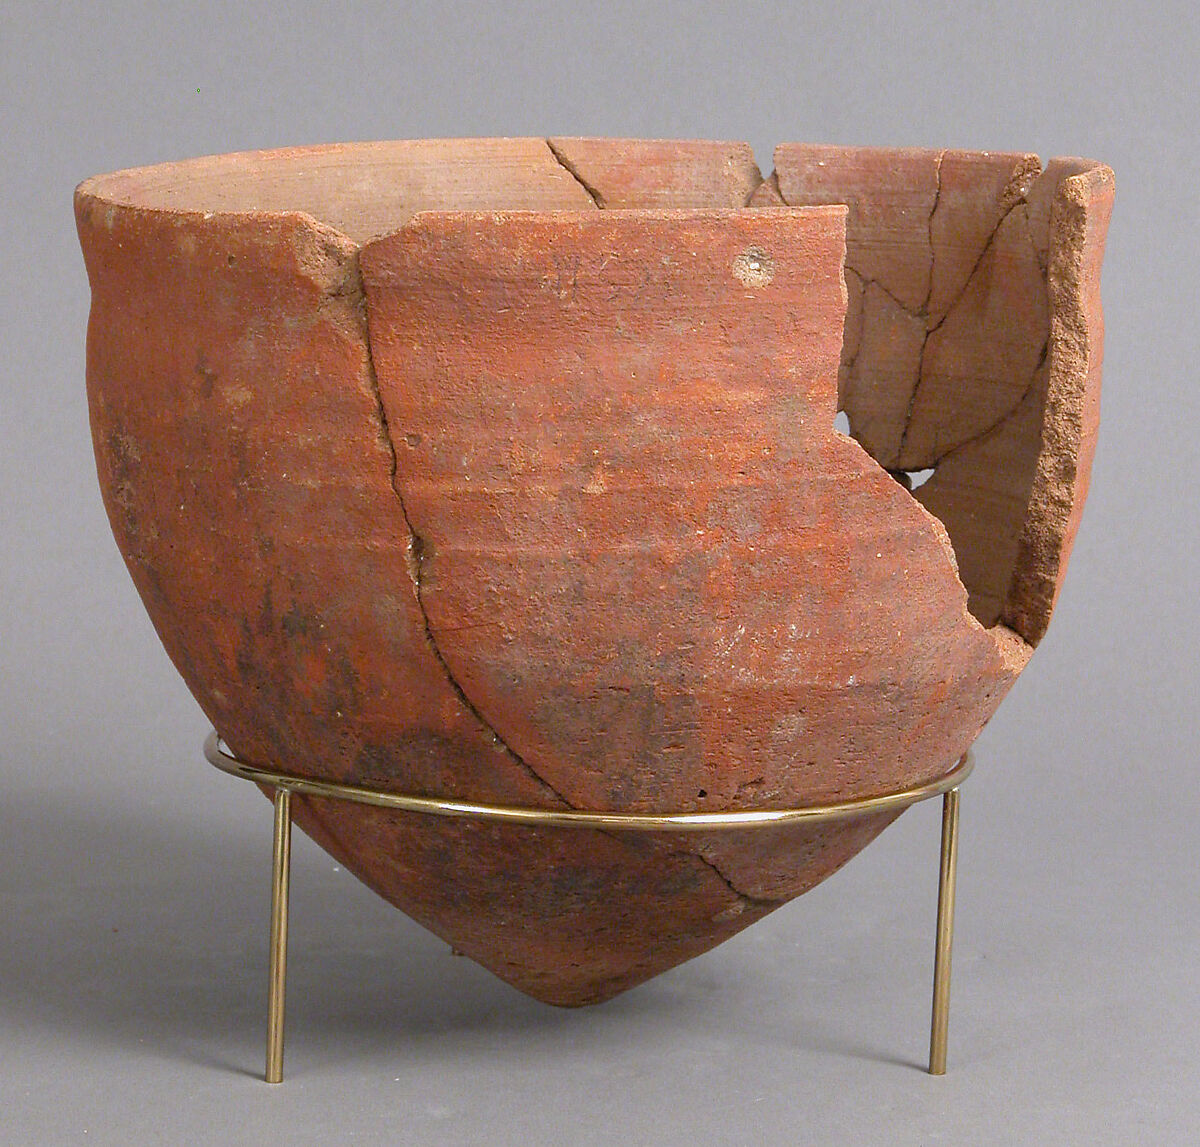 Vase, Earthenware, Coptic 